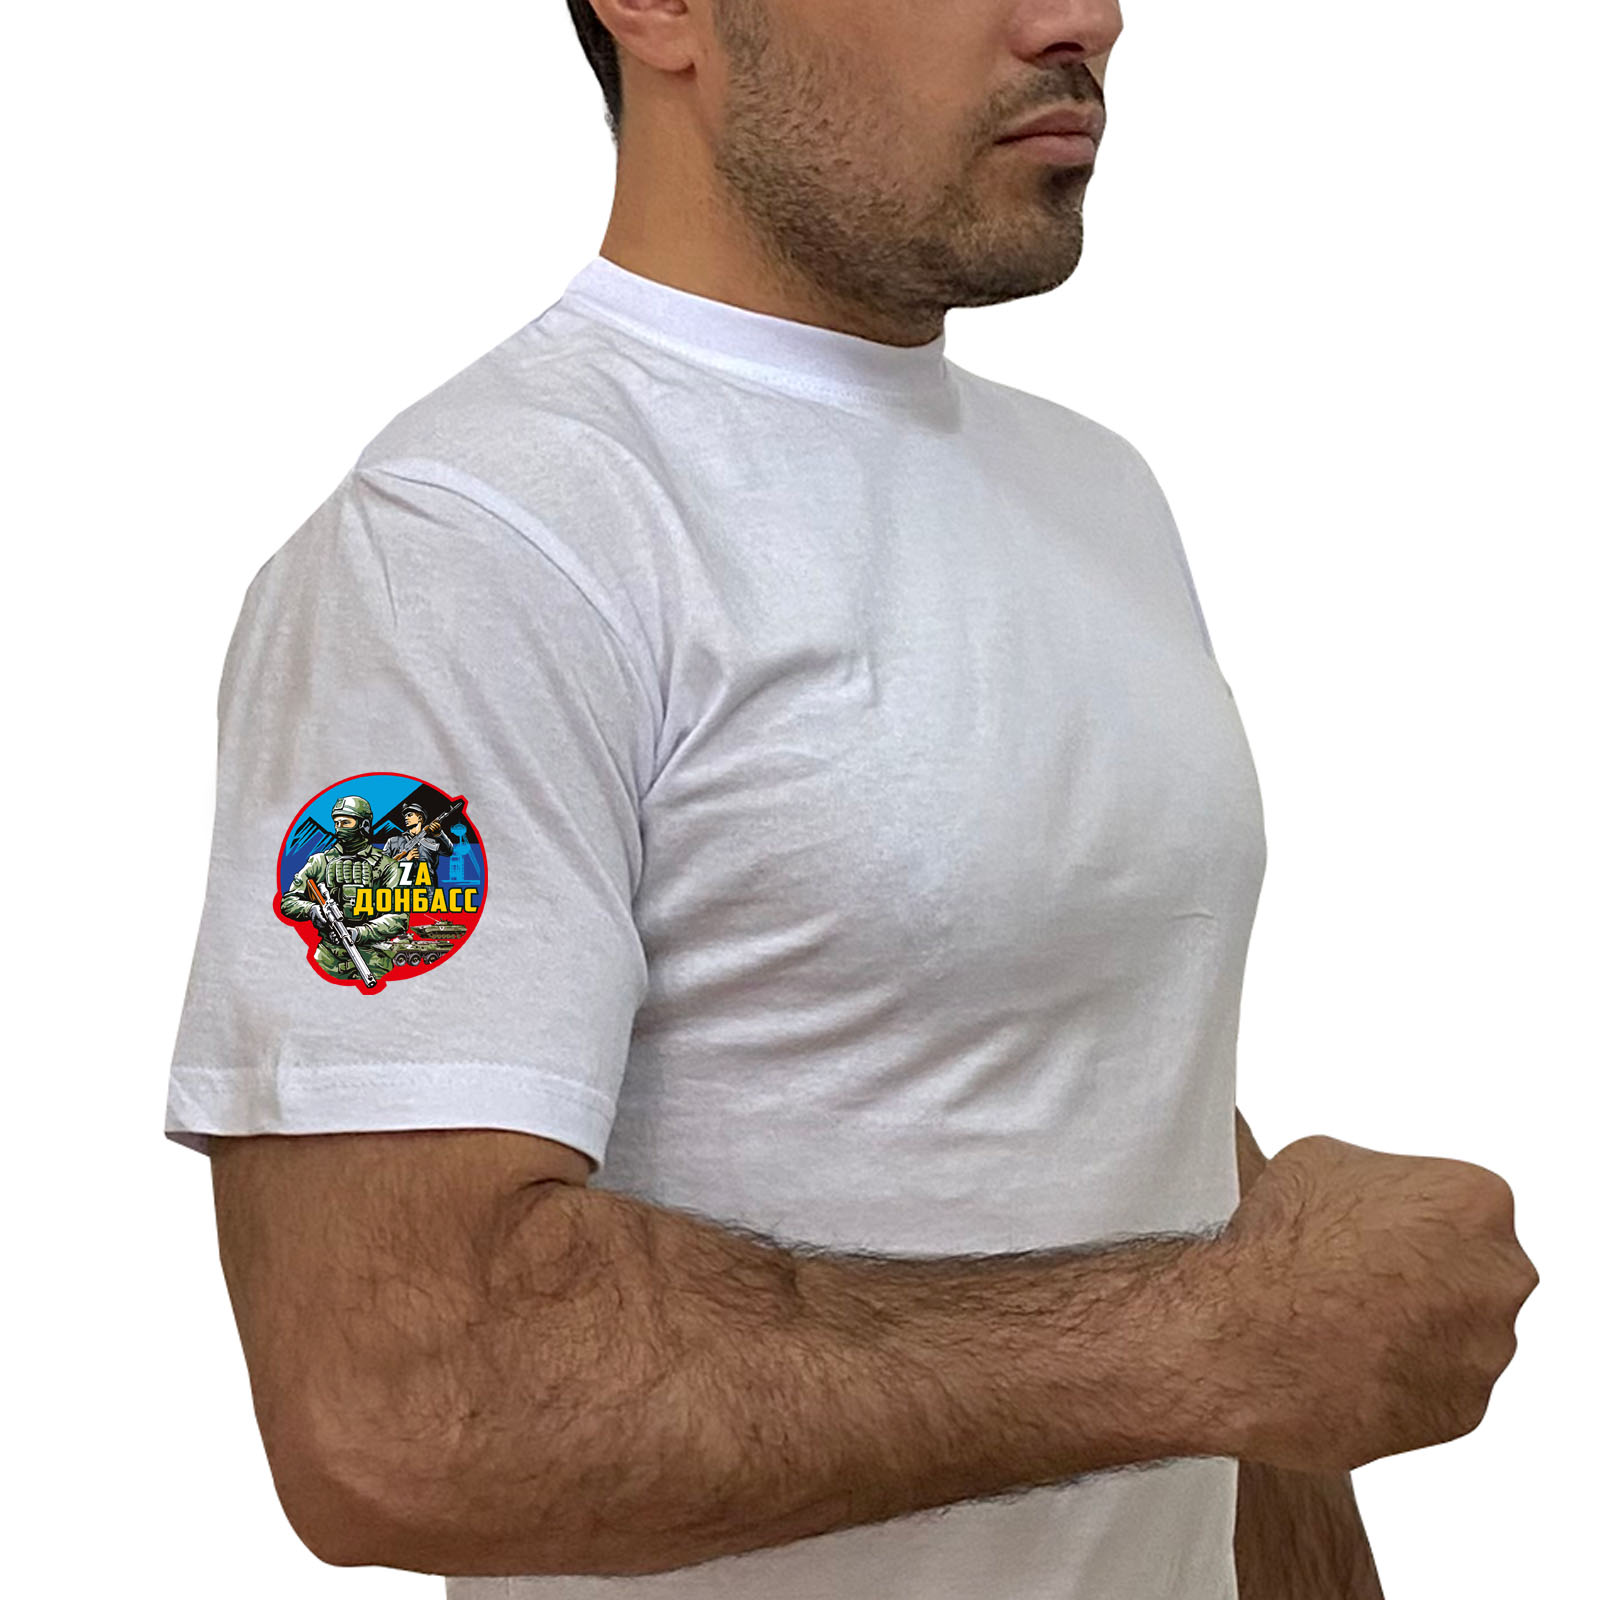 Купить белую футболку "Zа Донбасс" на рукаве